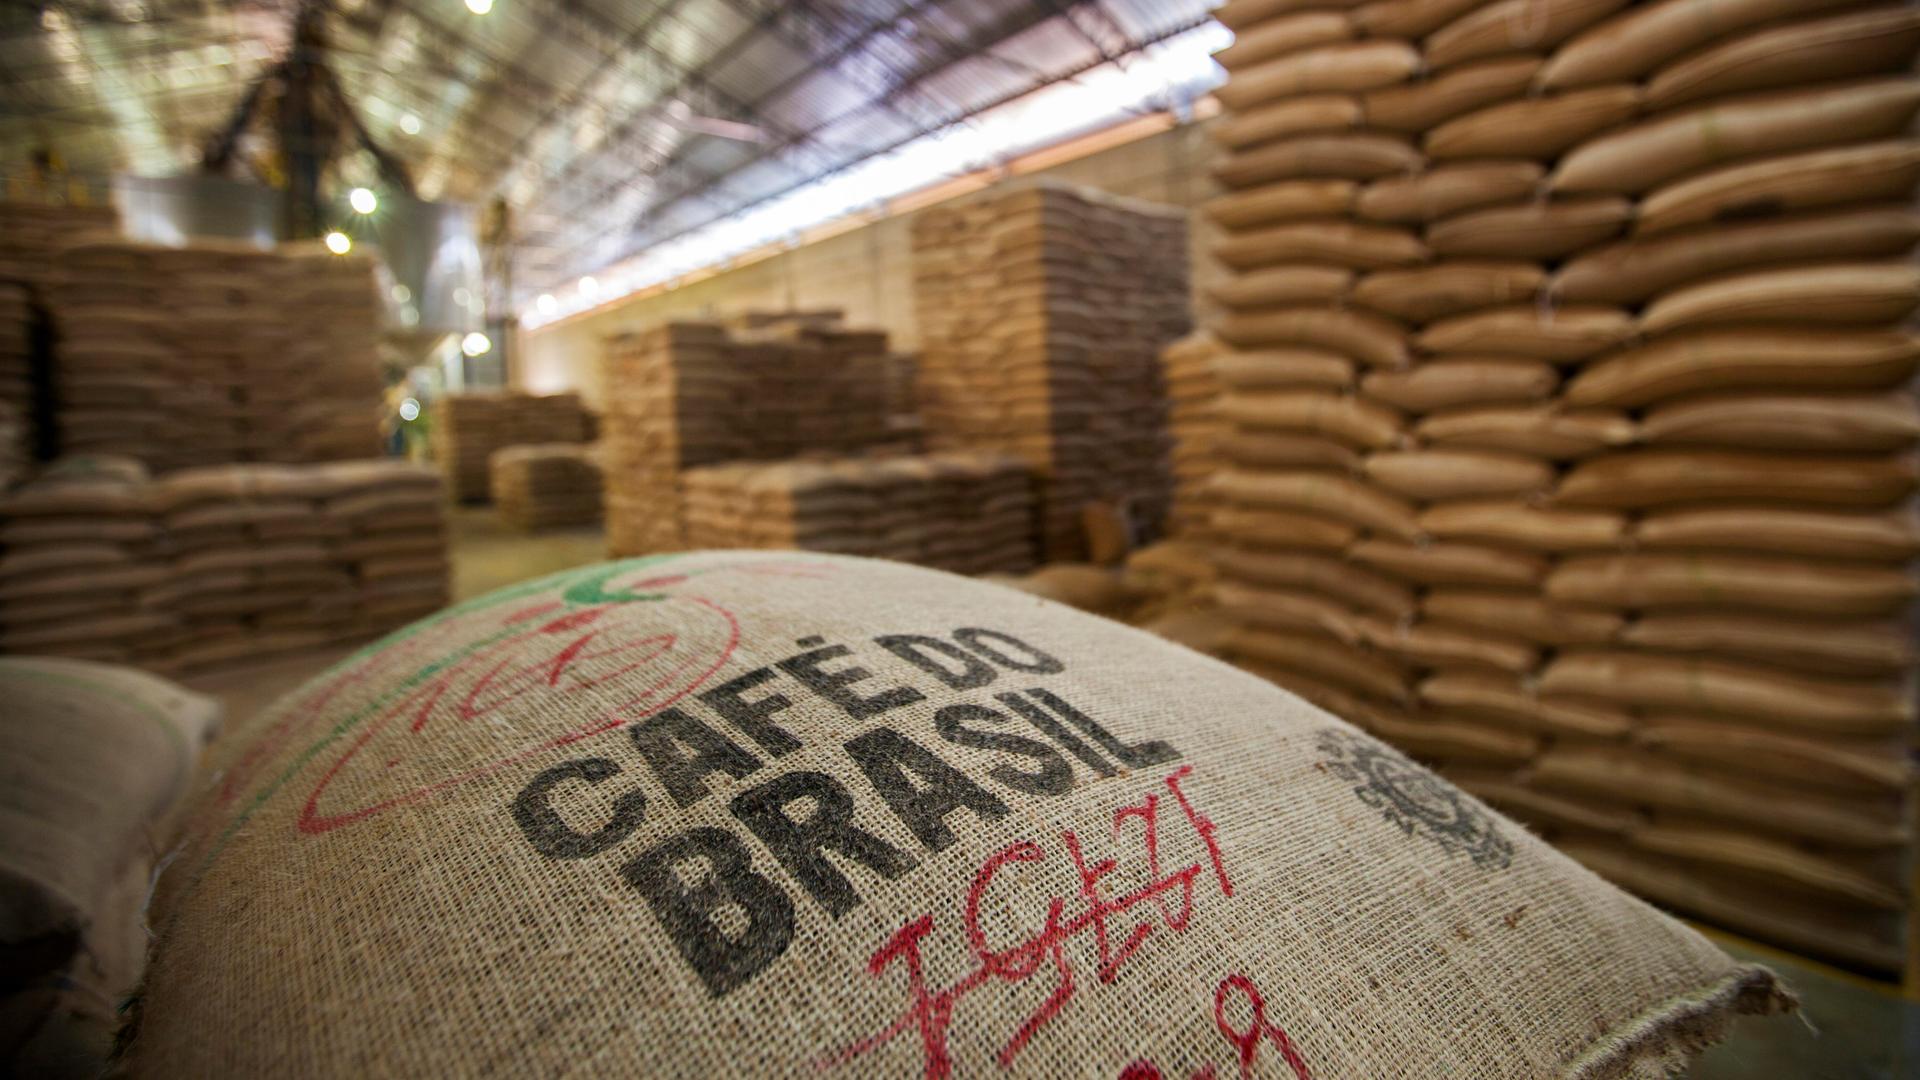 Im Vordergrund liegt ein Kaffeesack mit der Aufschrift "Café do Brasil" – zu deutsch "Kaffee aus Brasilien". Im Hintergrund sind in der Lagerhalle weitere Säcke gestapelt.